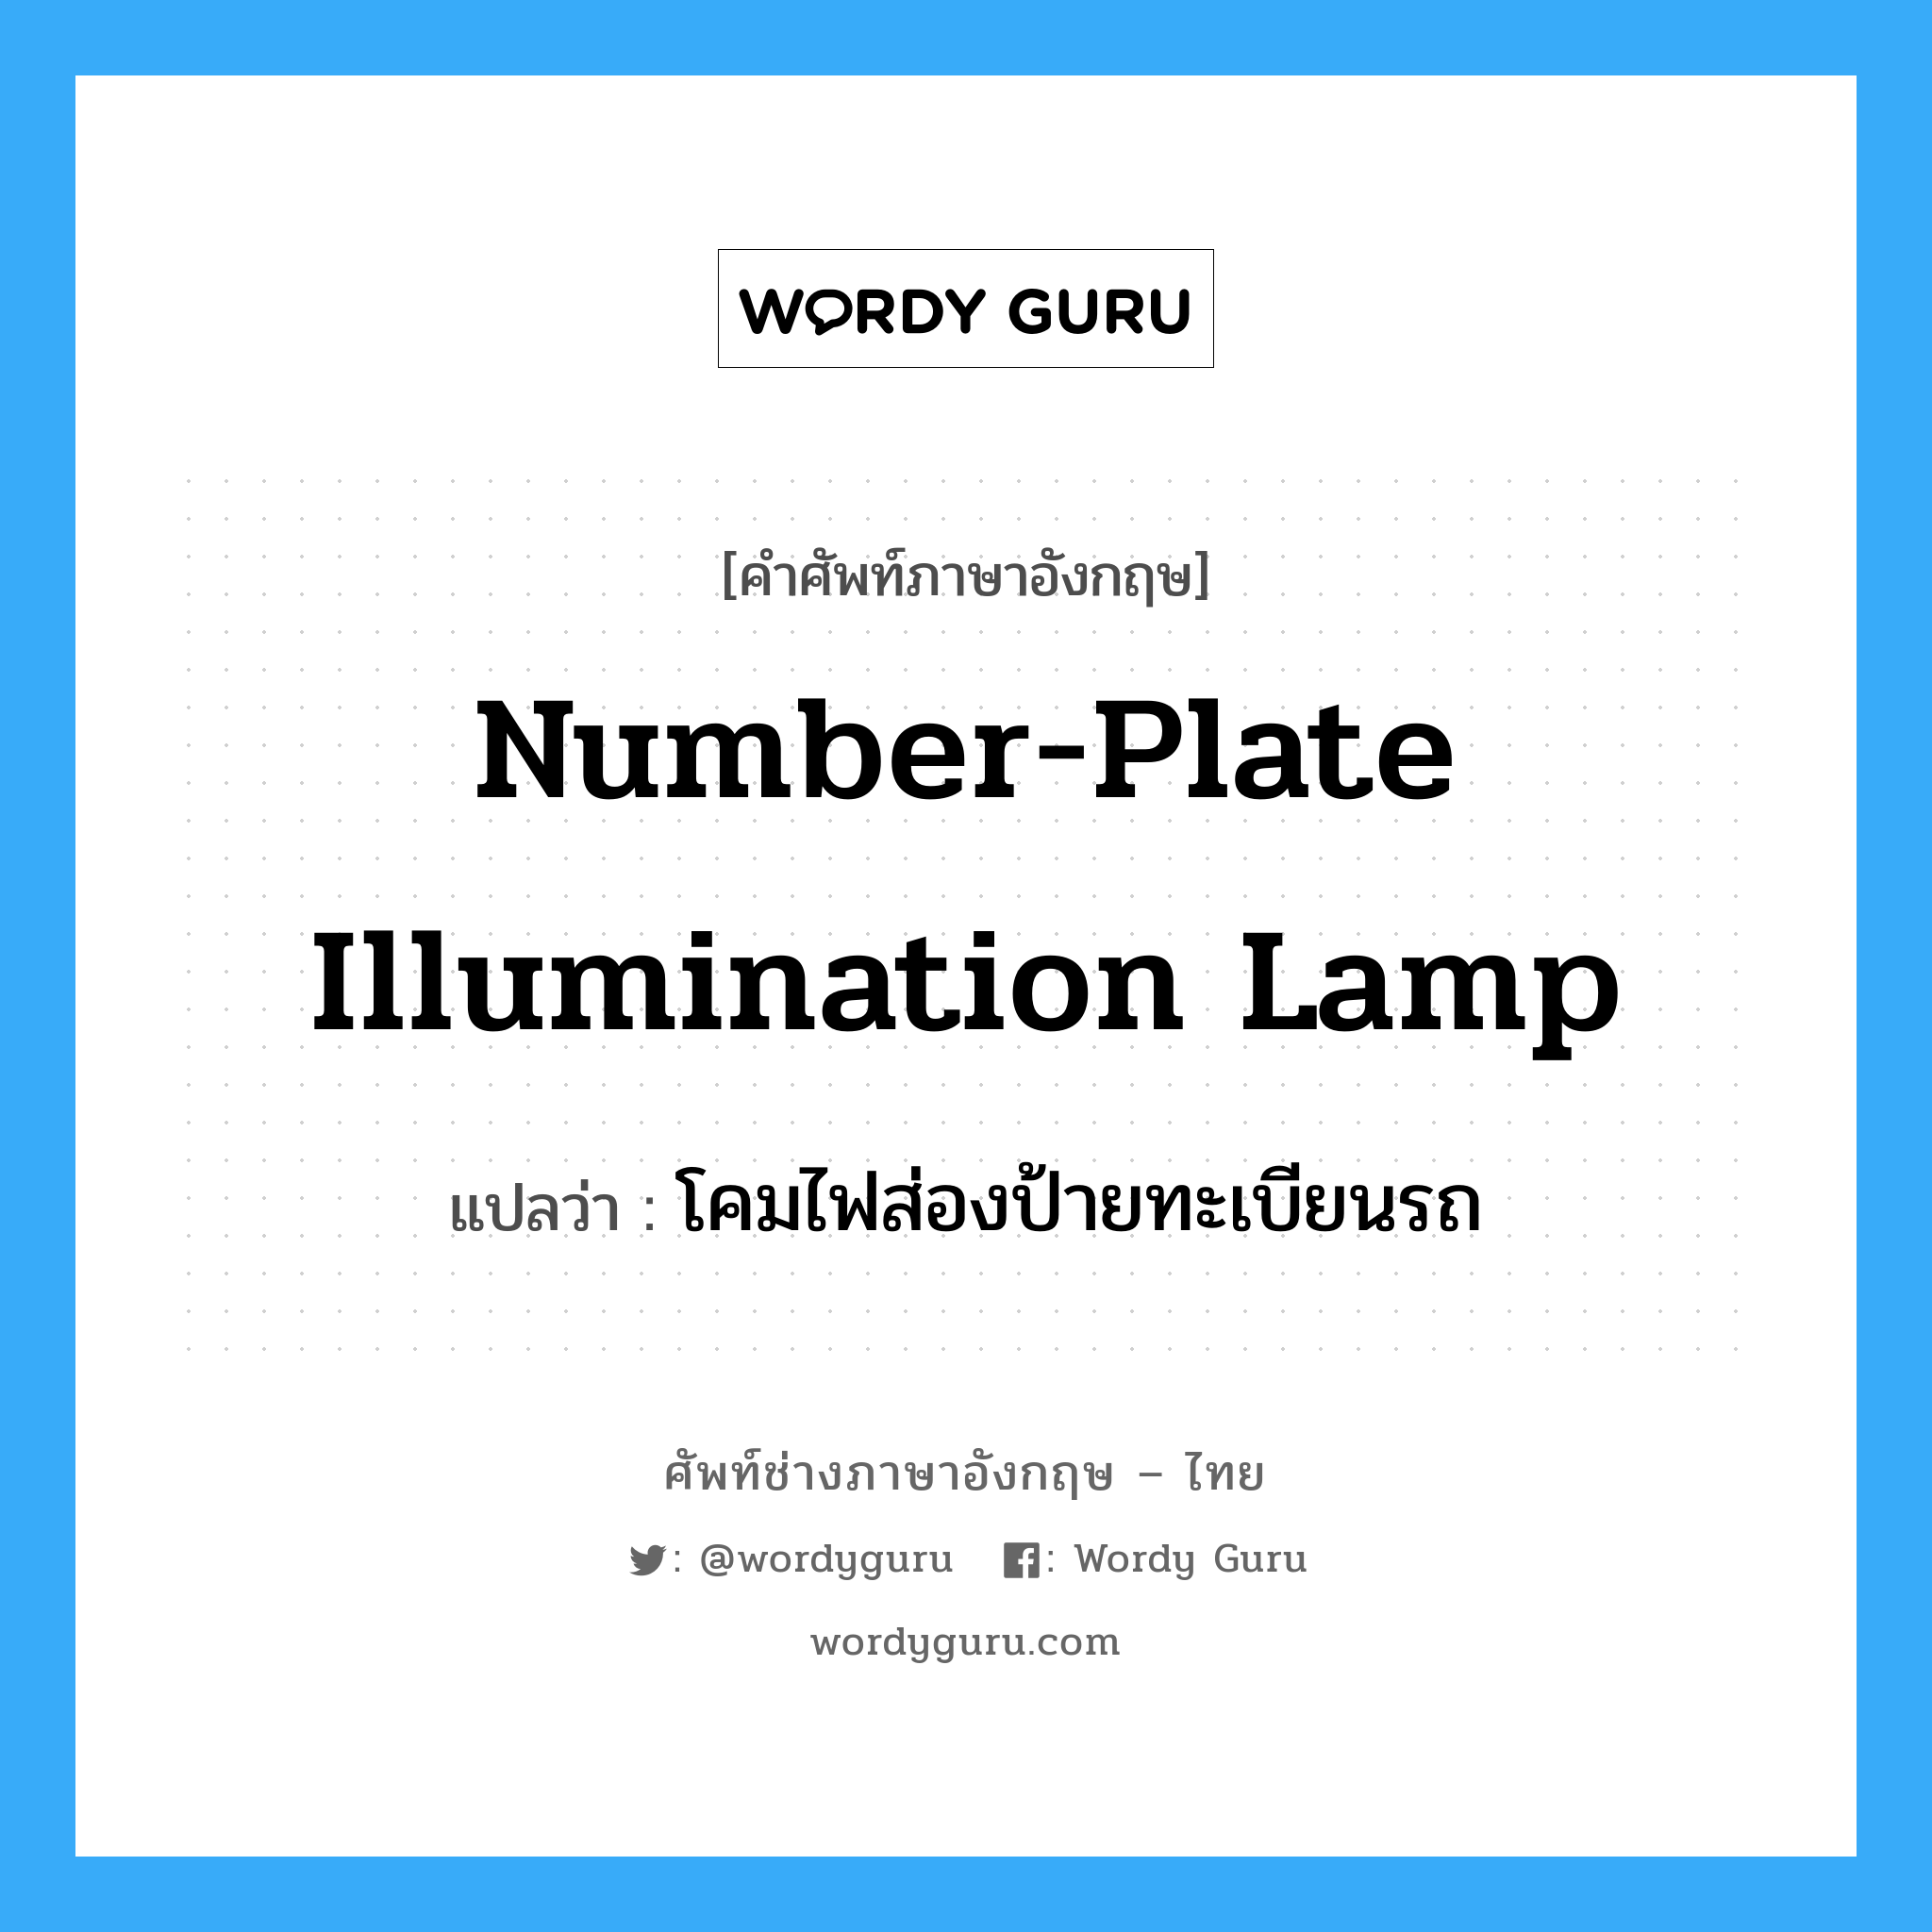 number-plate illumination lamp แปลว่า?, คำศัพท์ช่างภาษาอังกฤษ - ไทย number-plate illumination lamp คำศัพท์ภาษาอังกฤษ number-plate illumination lamp แปลว่า โคมไฟส่องป้ายทะเบียนรถ